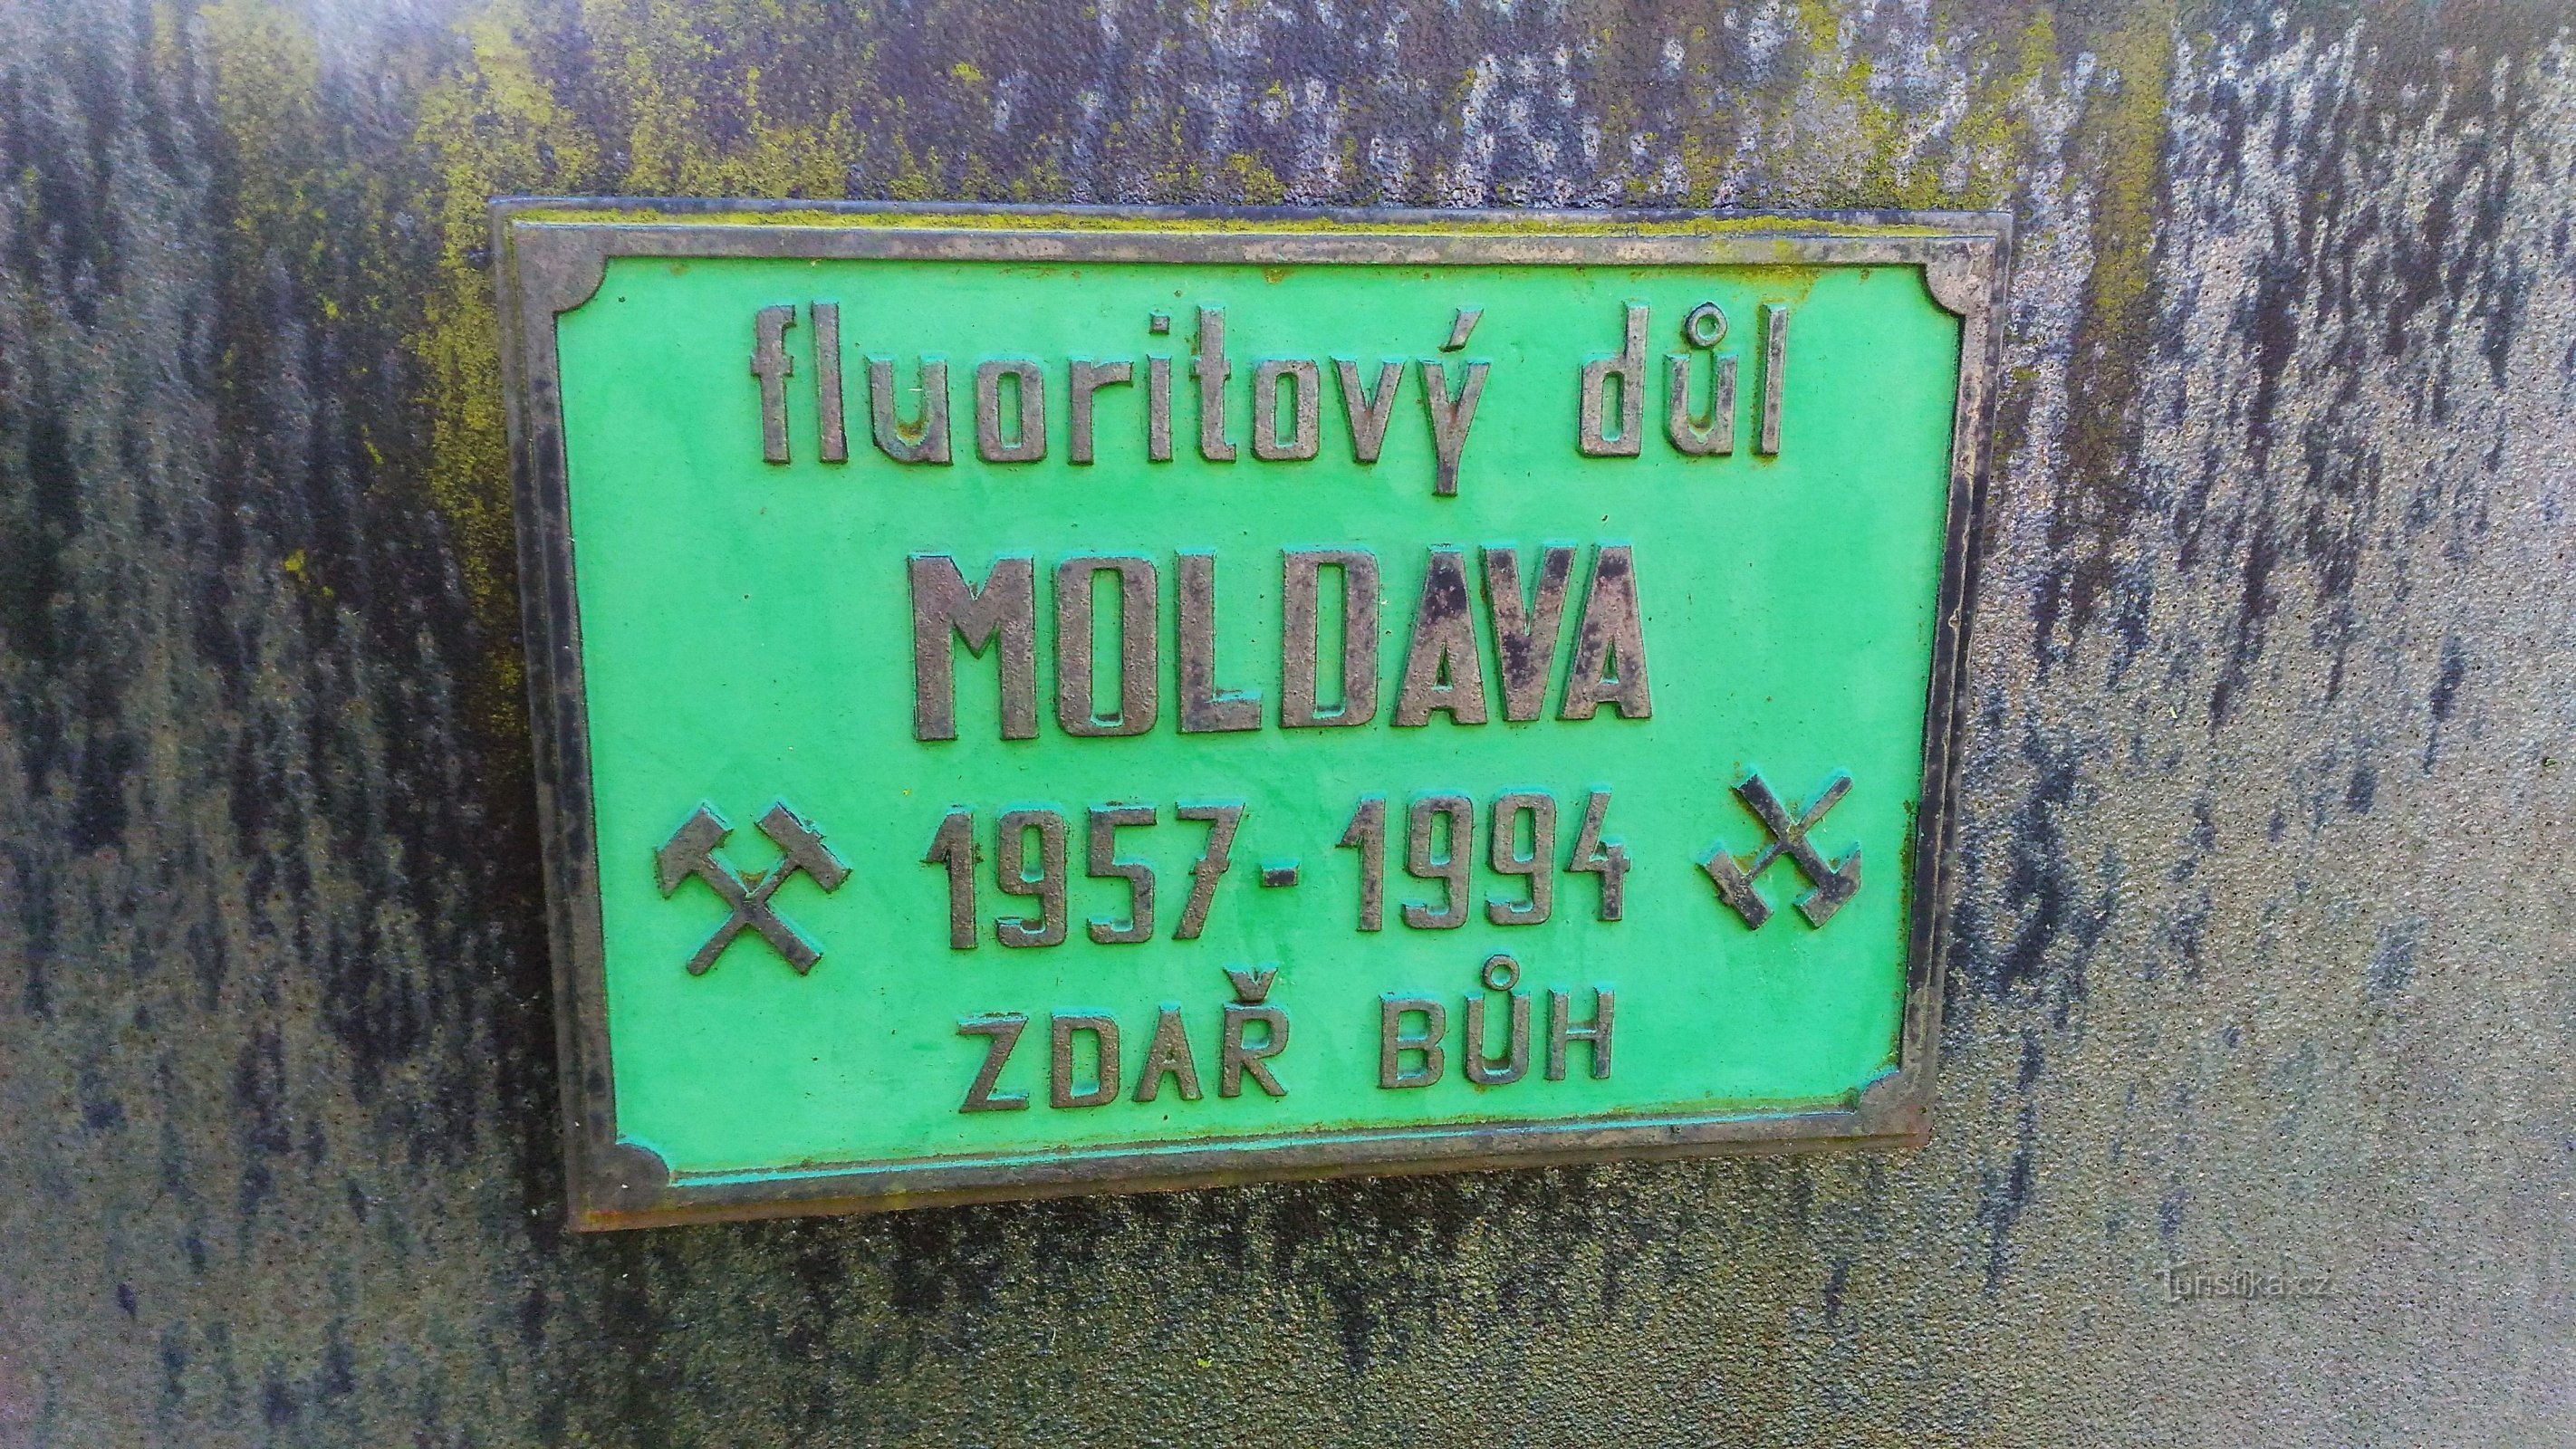 Spomenik rudarstvu fluorita u Moldaviji